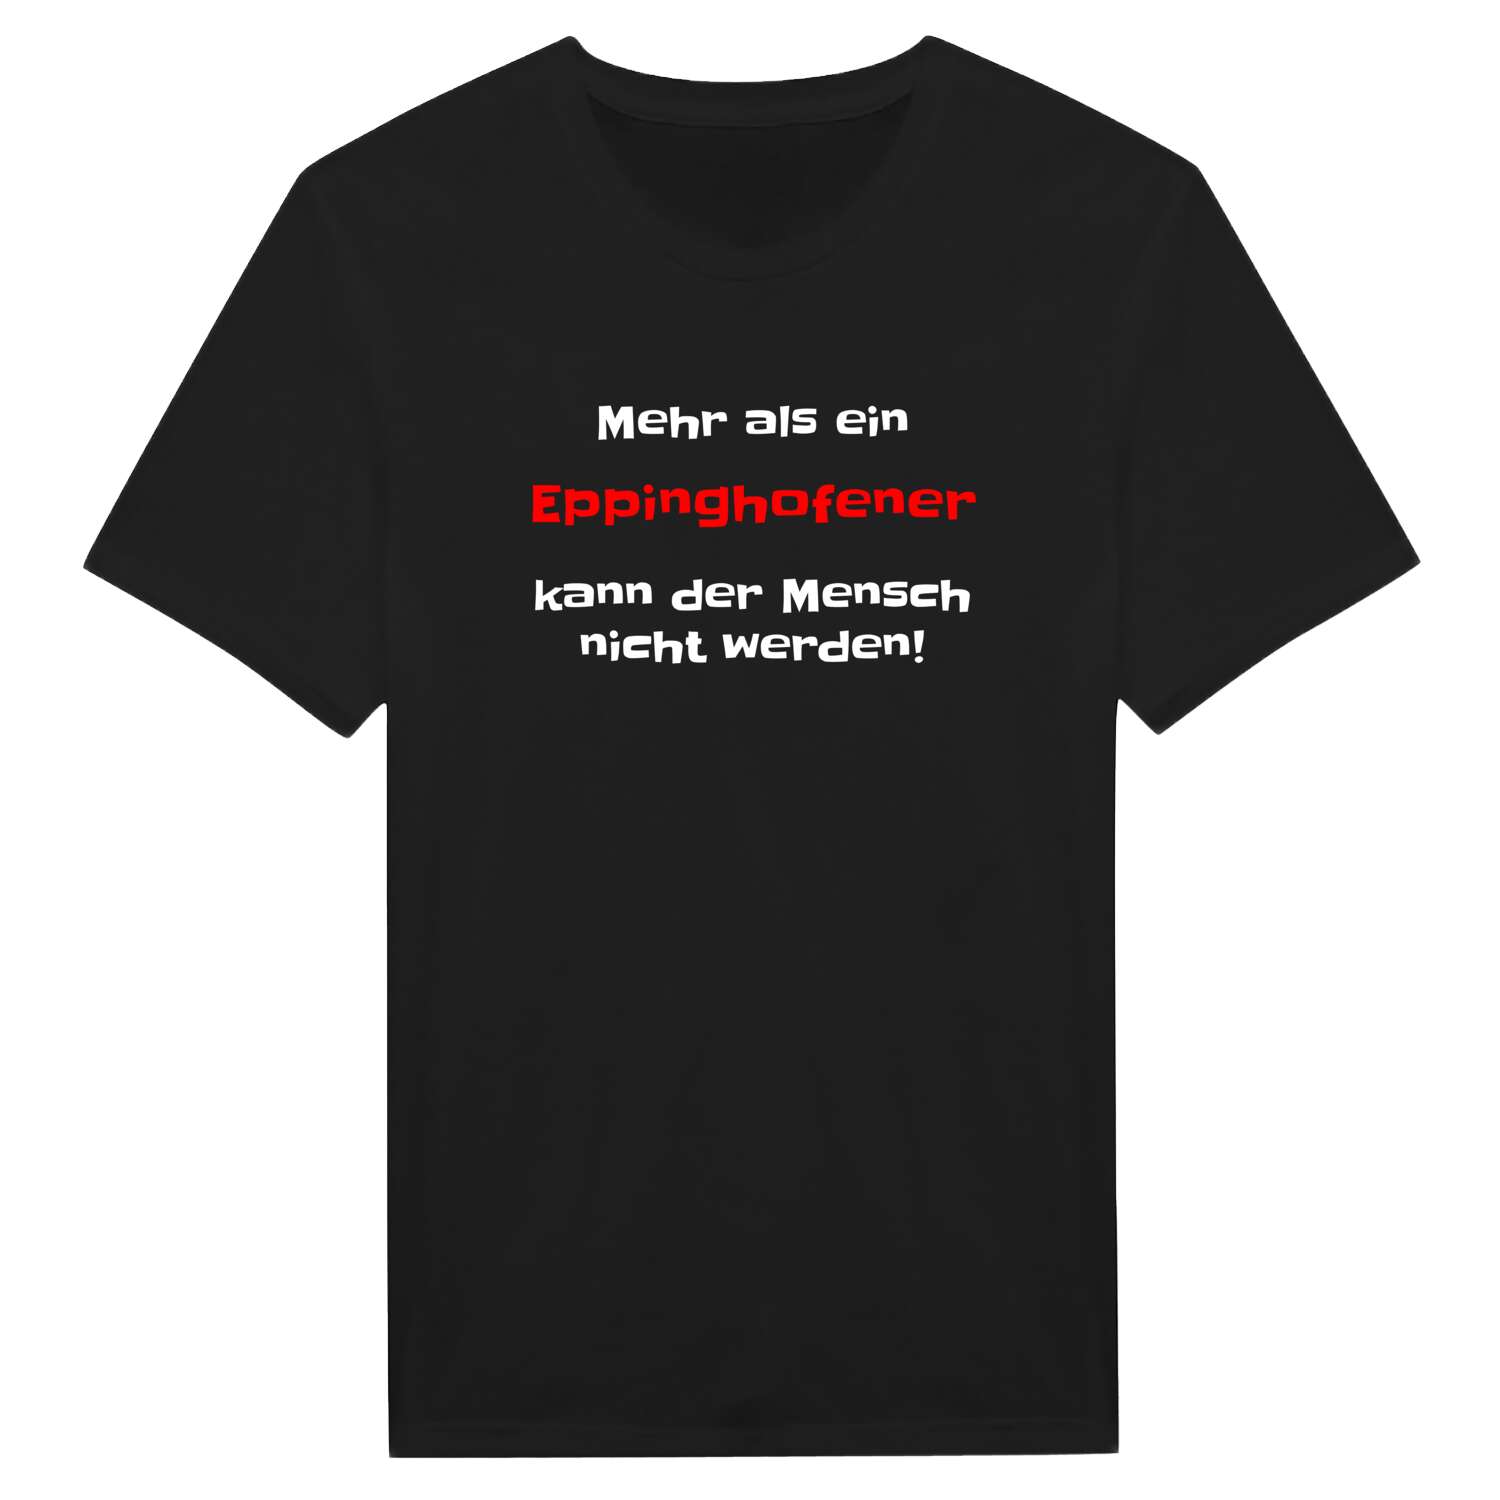 Eppinghofen T-Shirt »Mehr als ein«